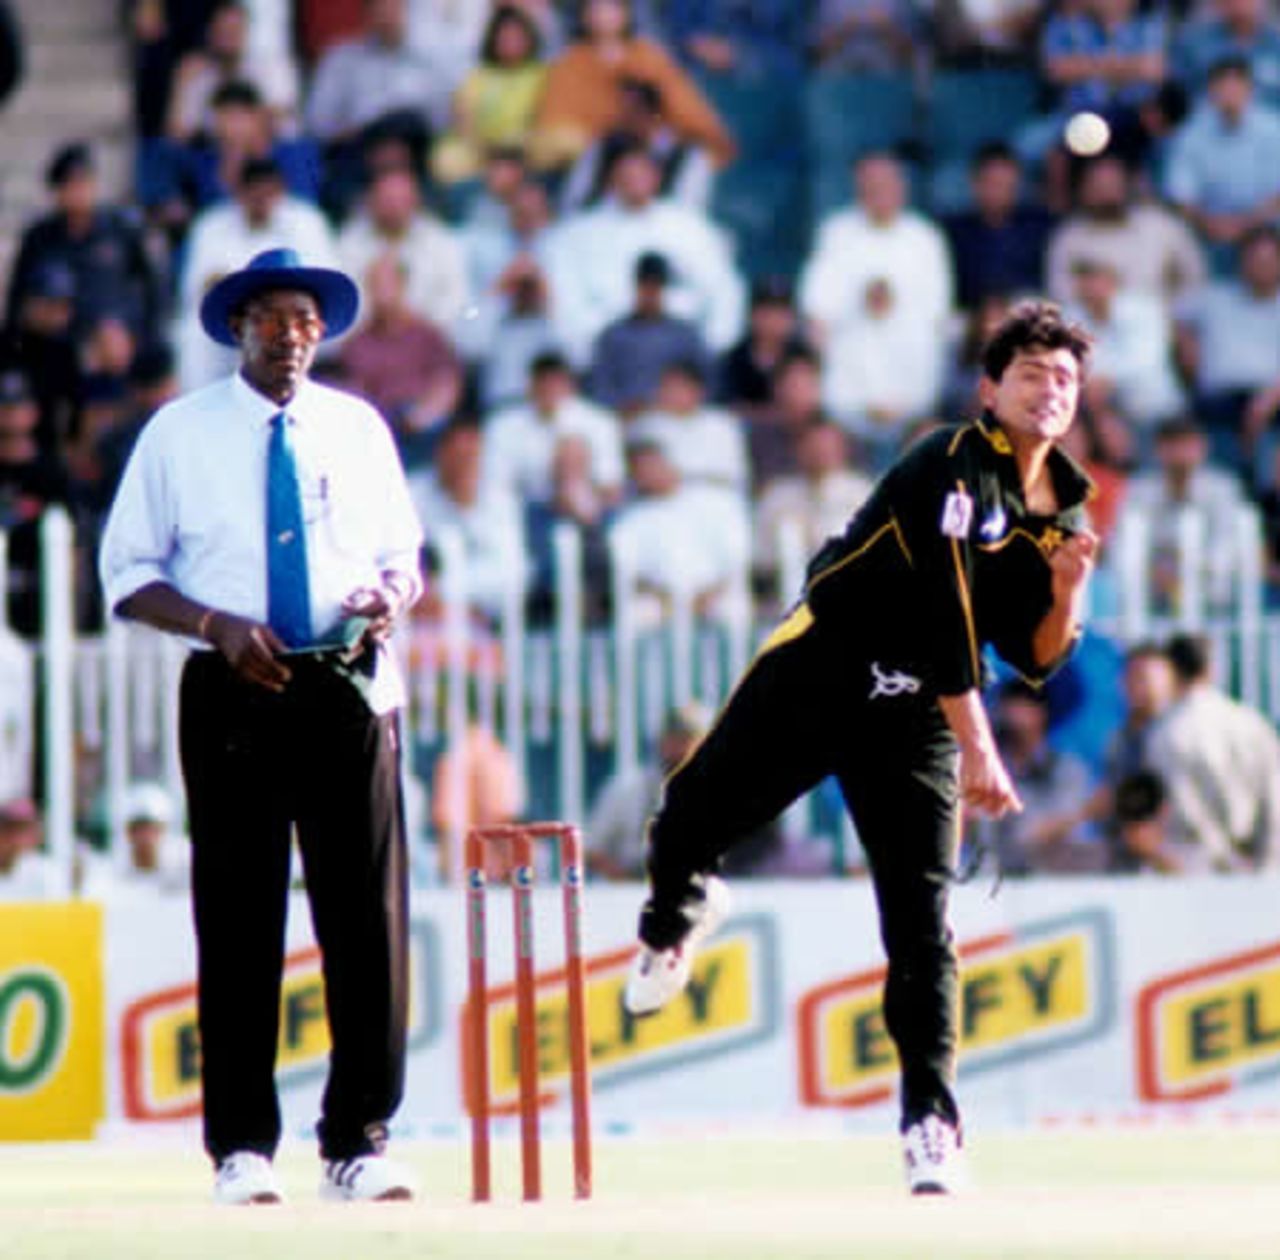 Saqlain Mushtaq bowls watched by umpire Steve Bucknor - 2nd ODI at Rawalpindi, New Zealand v Pakistan, 24 Apr 2002